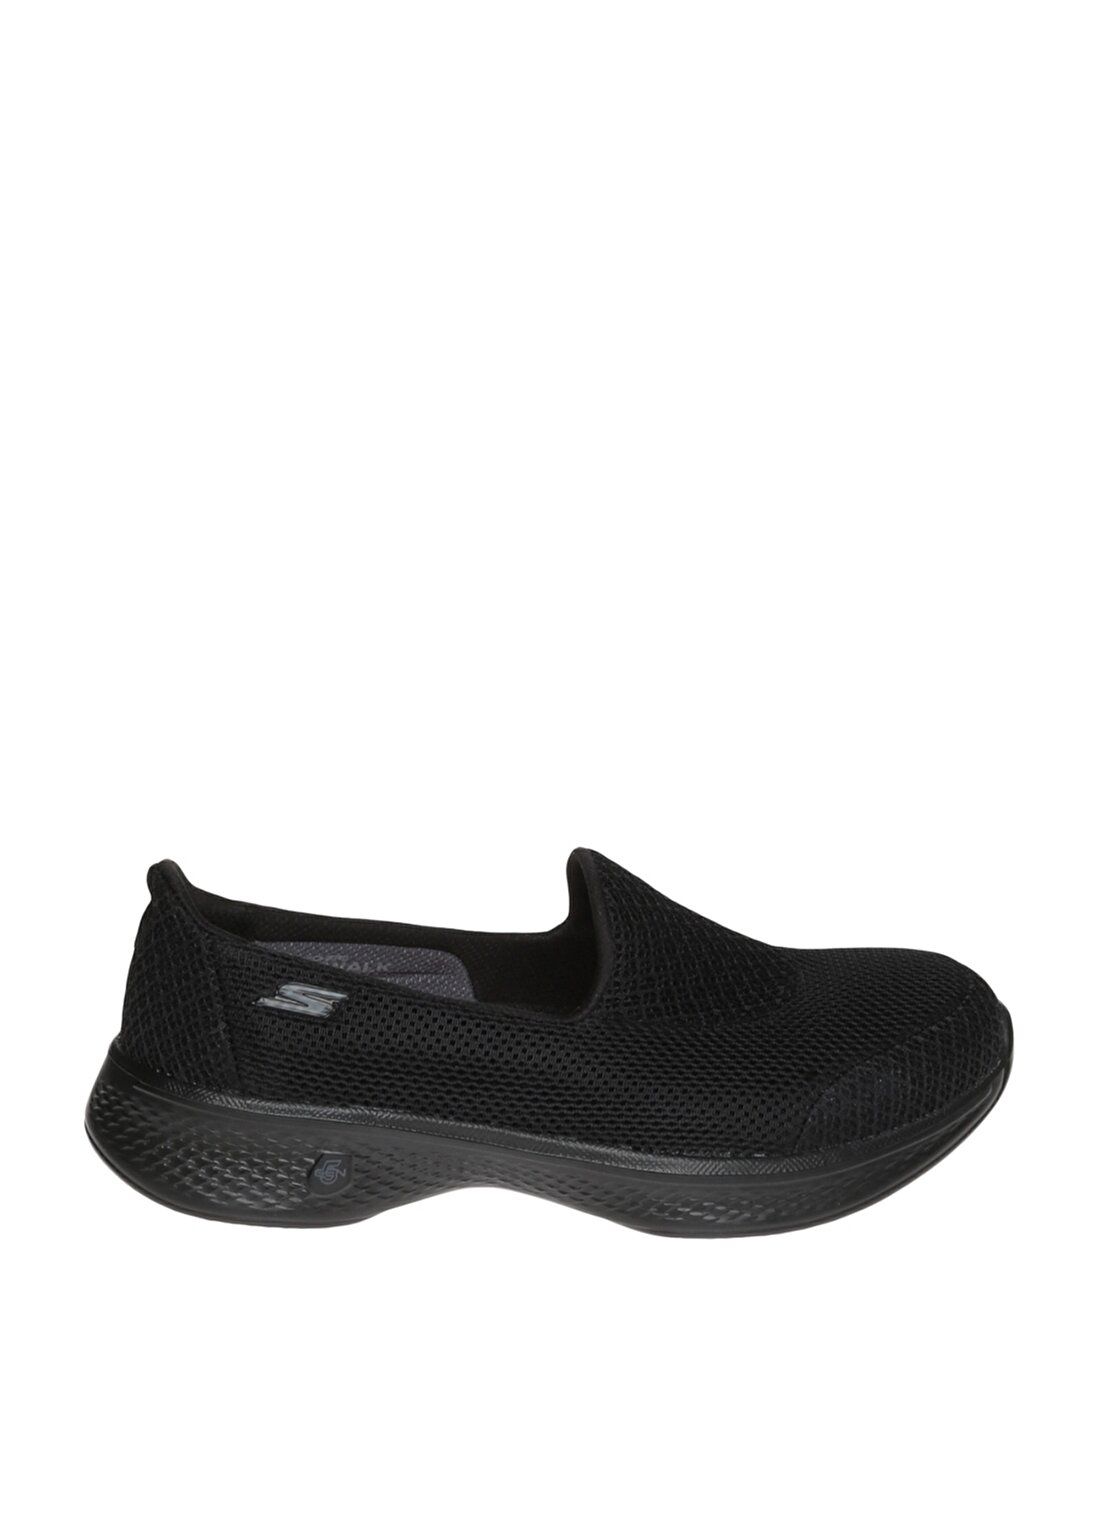 Skechers Go Walk 4 - Propel Siyah Kadın Yürüyüş Ayakkabısı